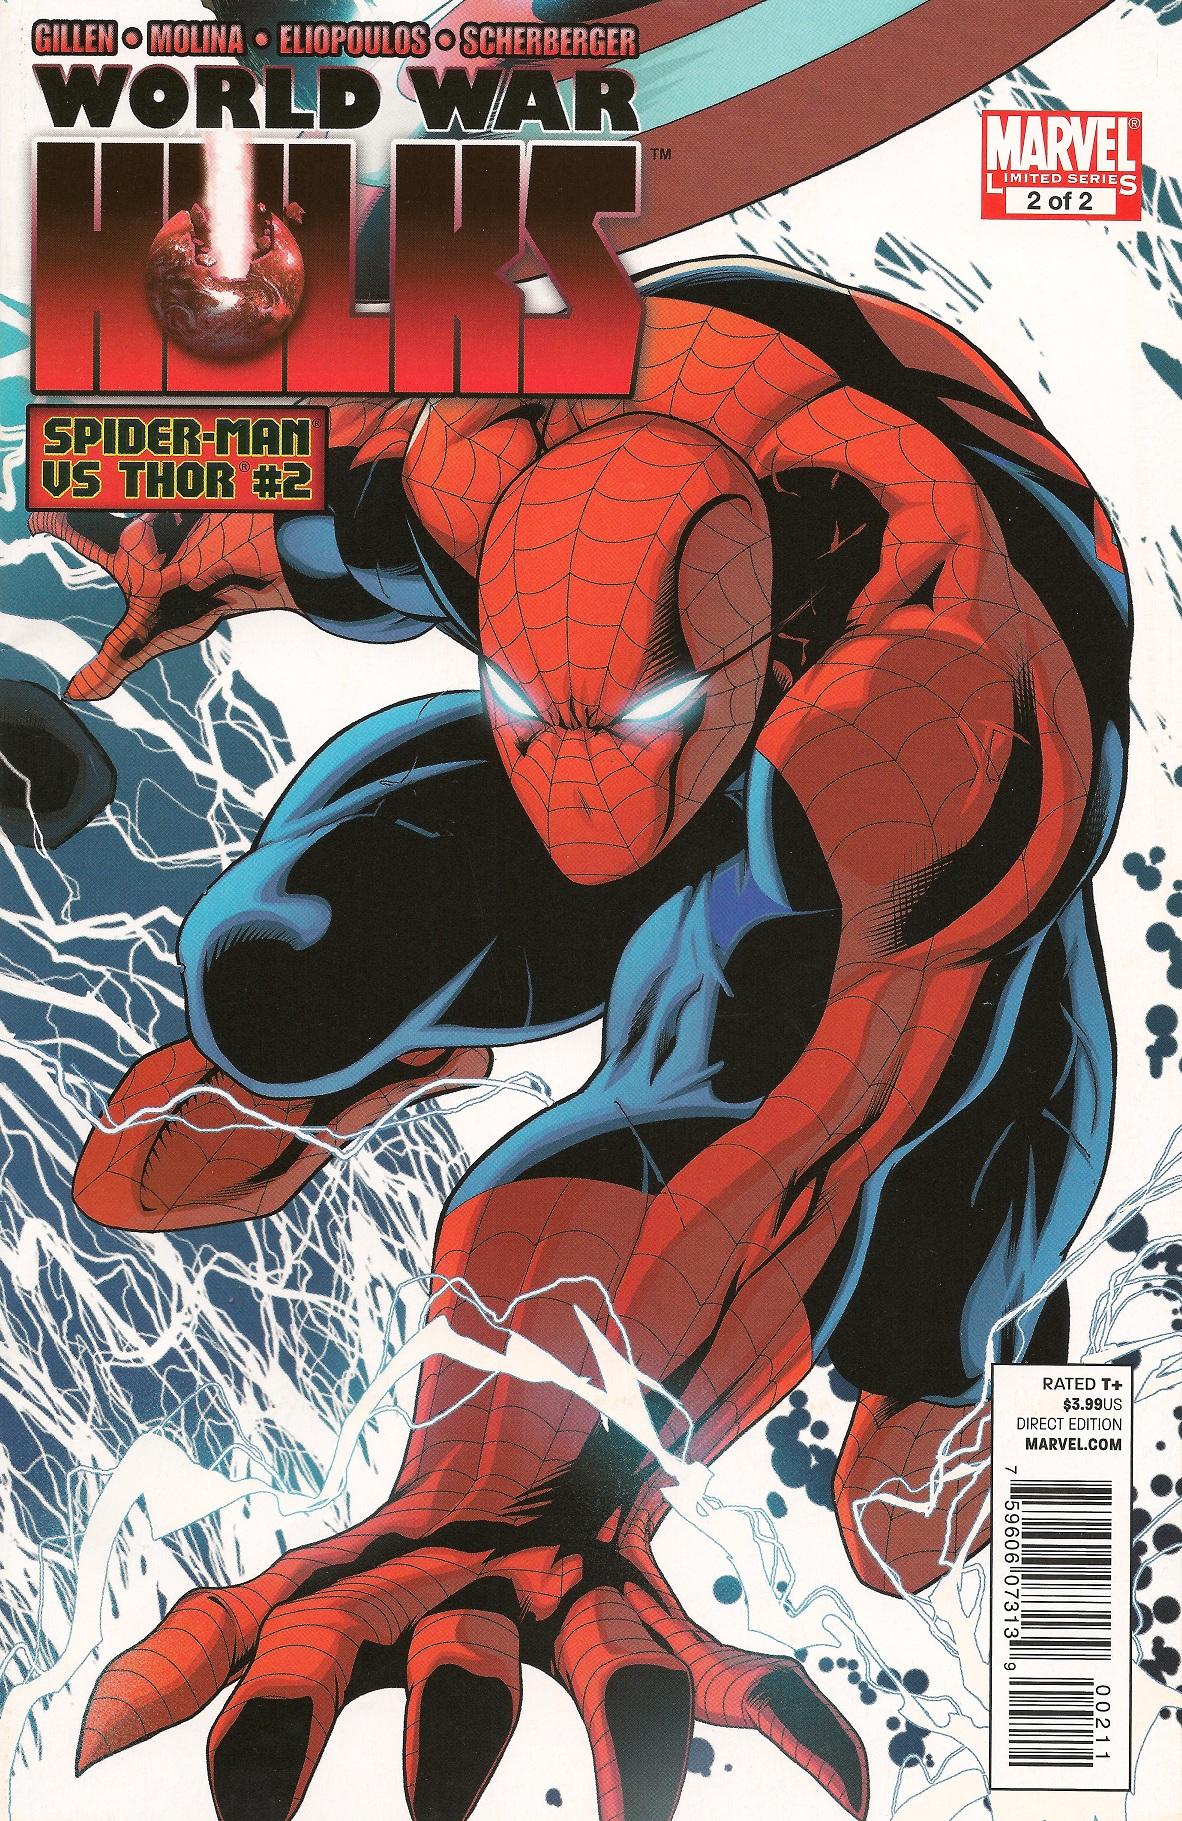 World War Hulks: Spider-Man & Thor Vol. 1 #2